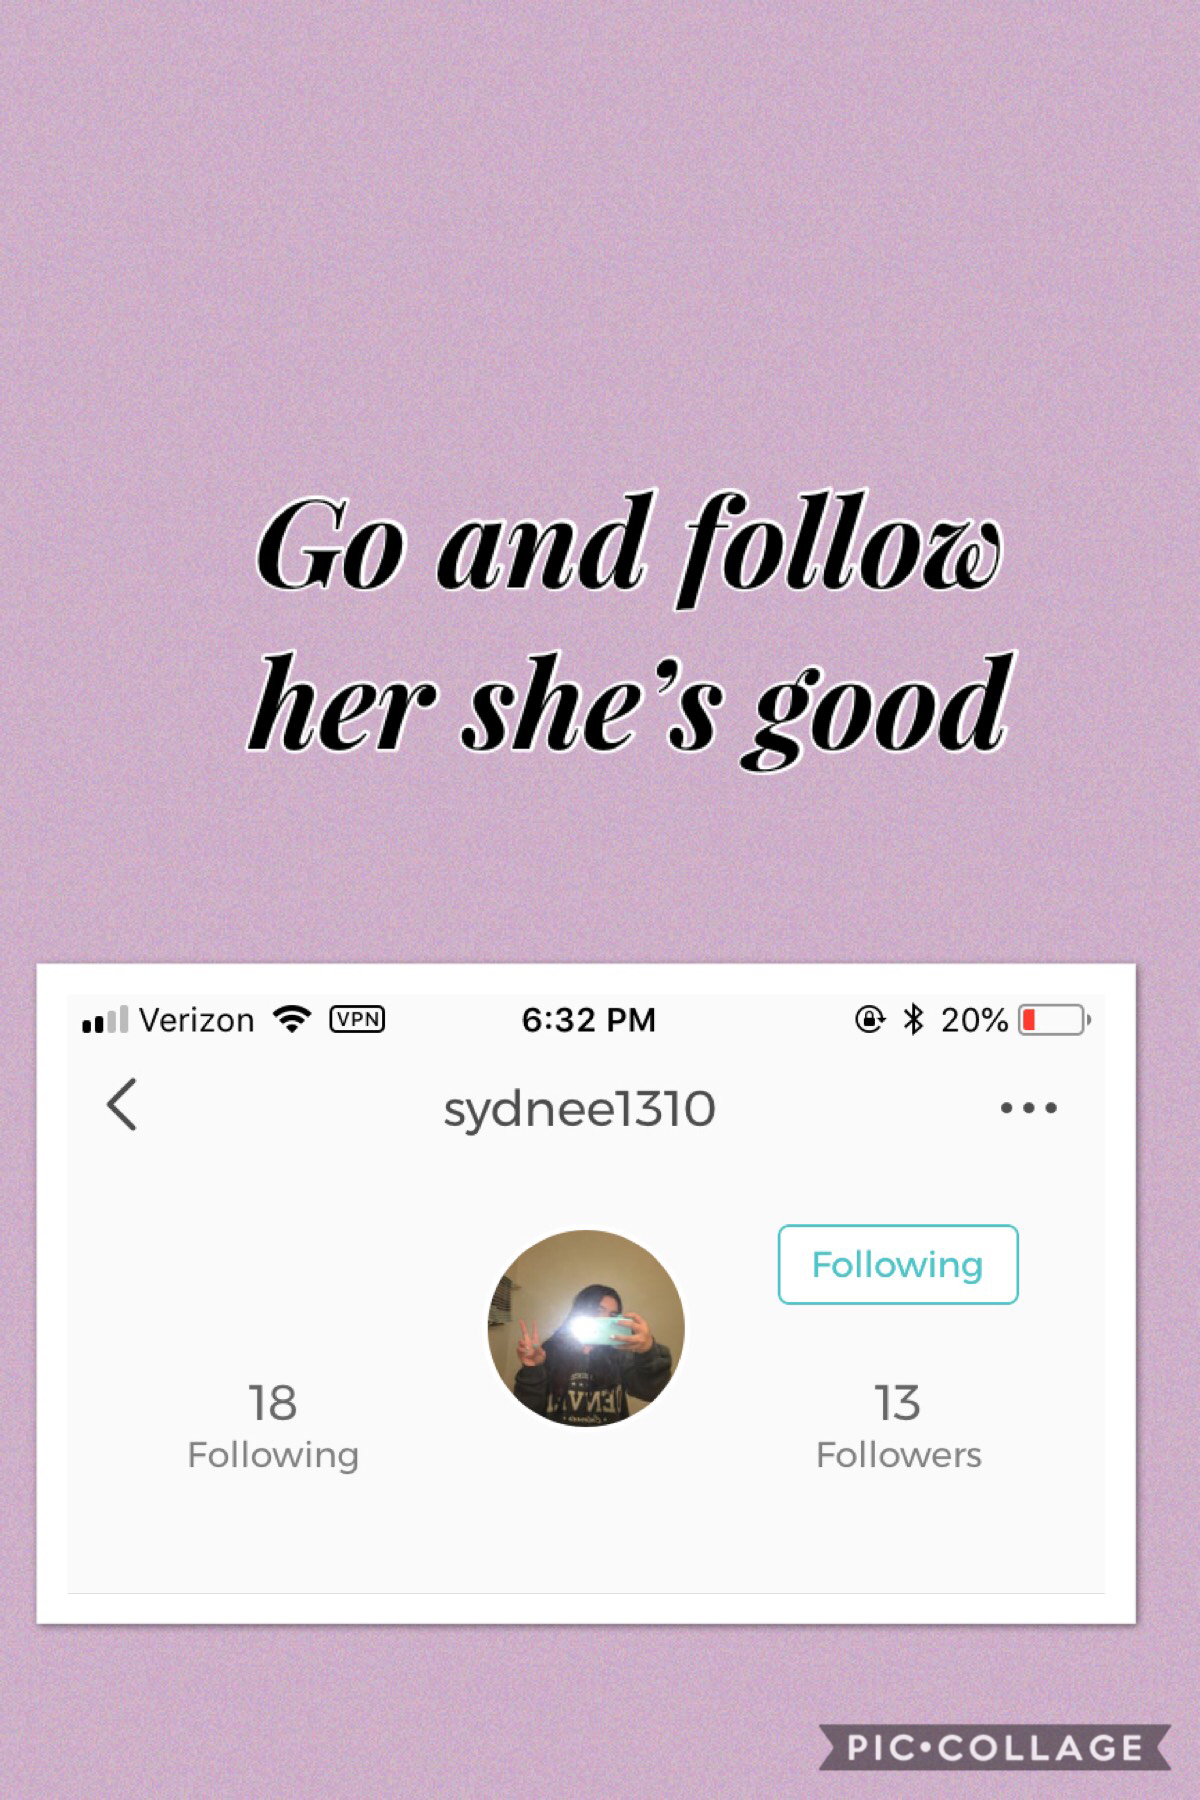 Go and follow Sydnee1310